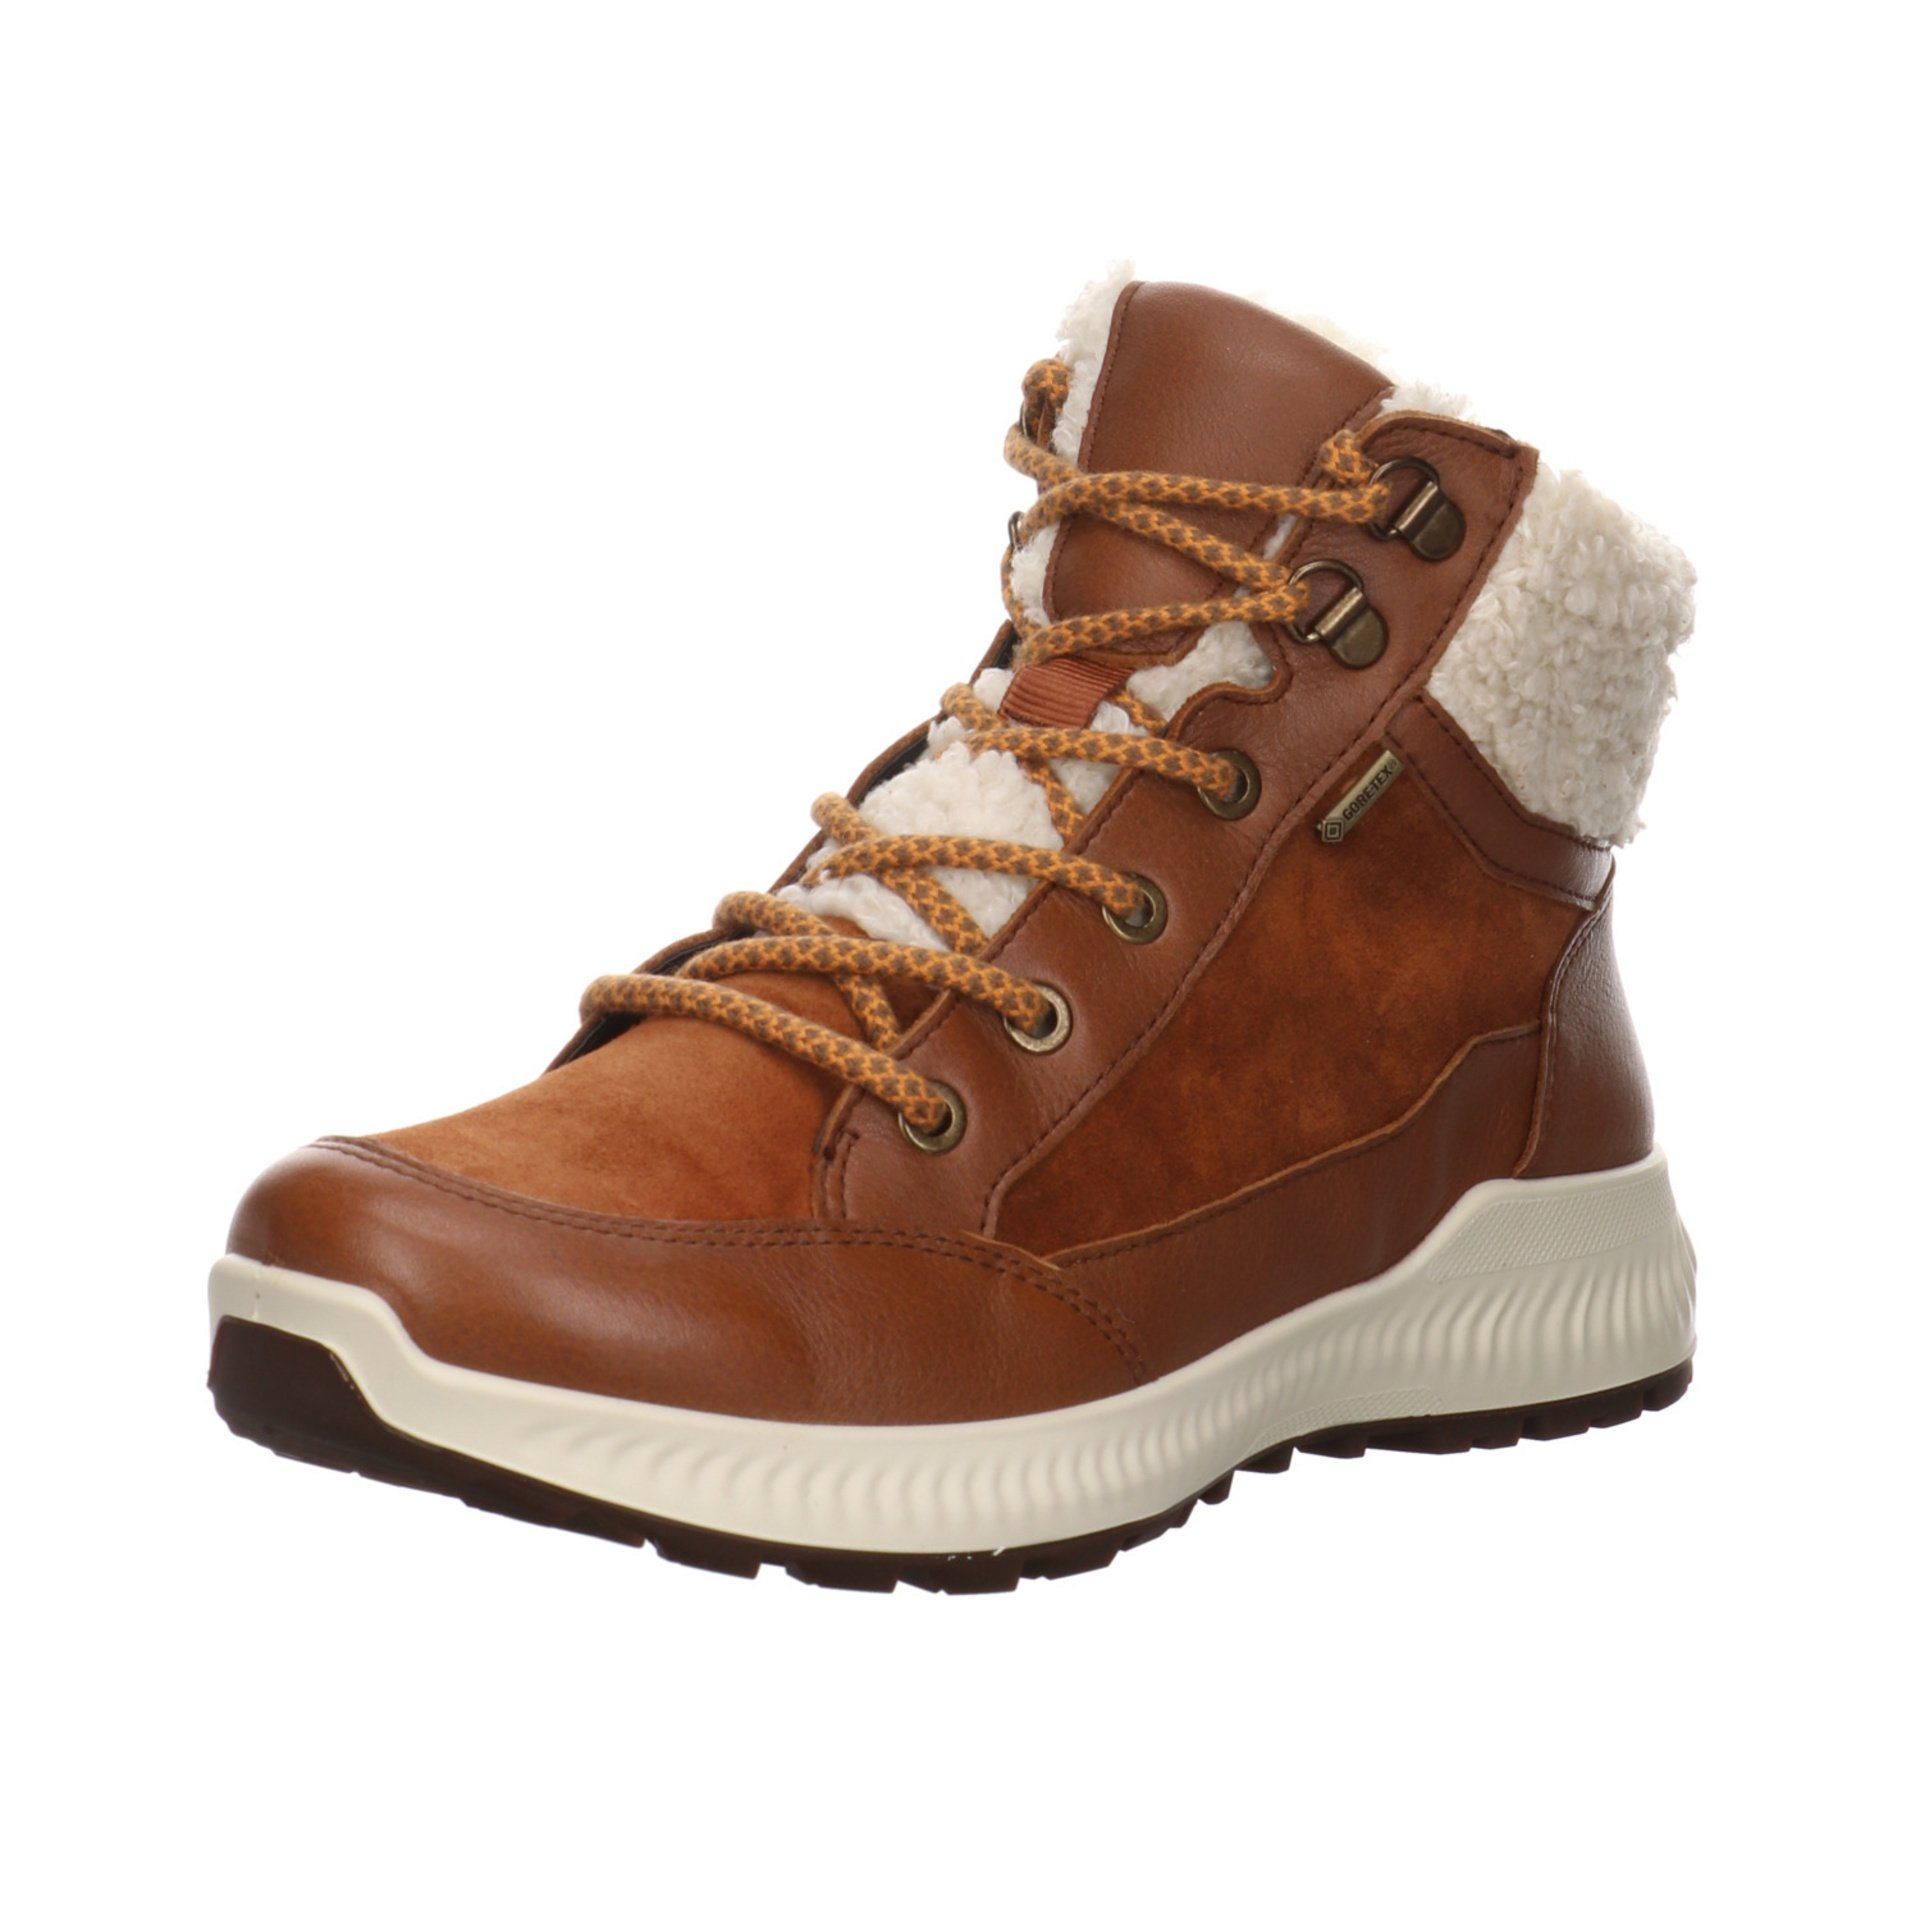 Stiefelette Damen Leder-/Textilkombination Hiker Stiefel Boots braun Elegant 046745 Ara Freizeit Schuhe